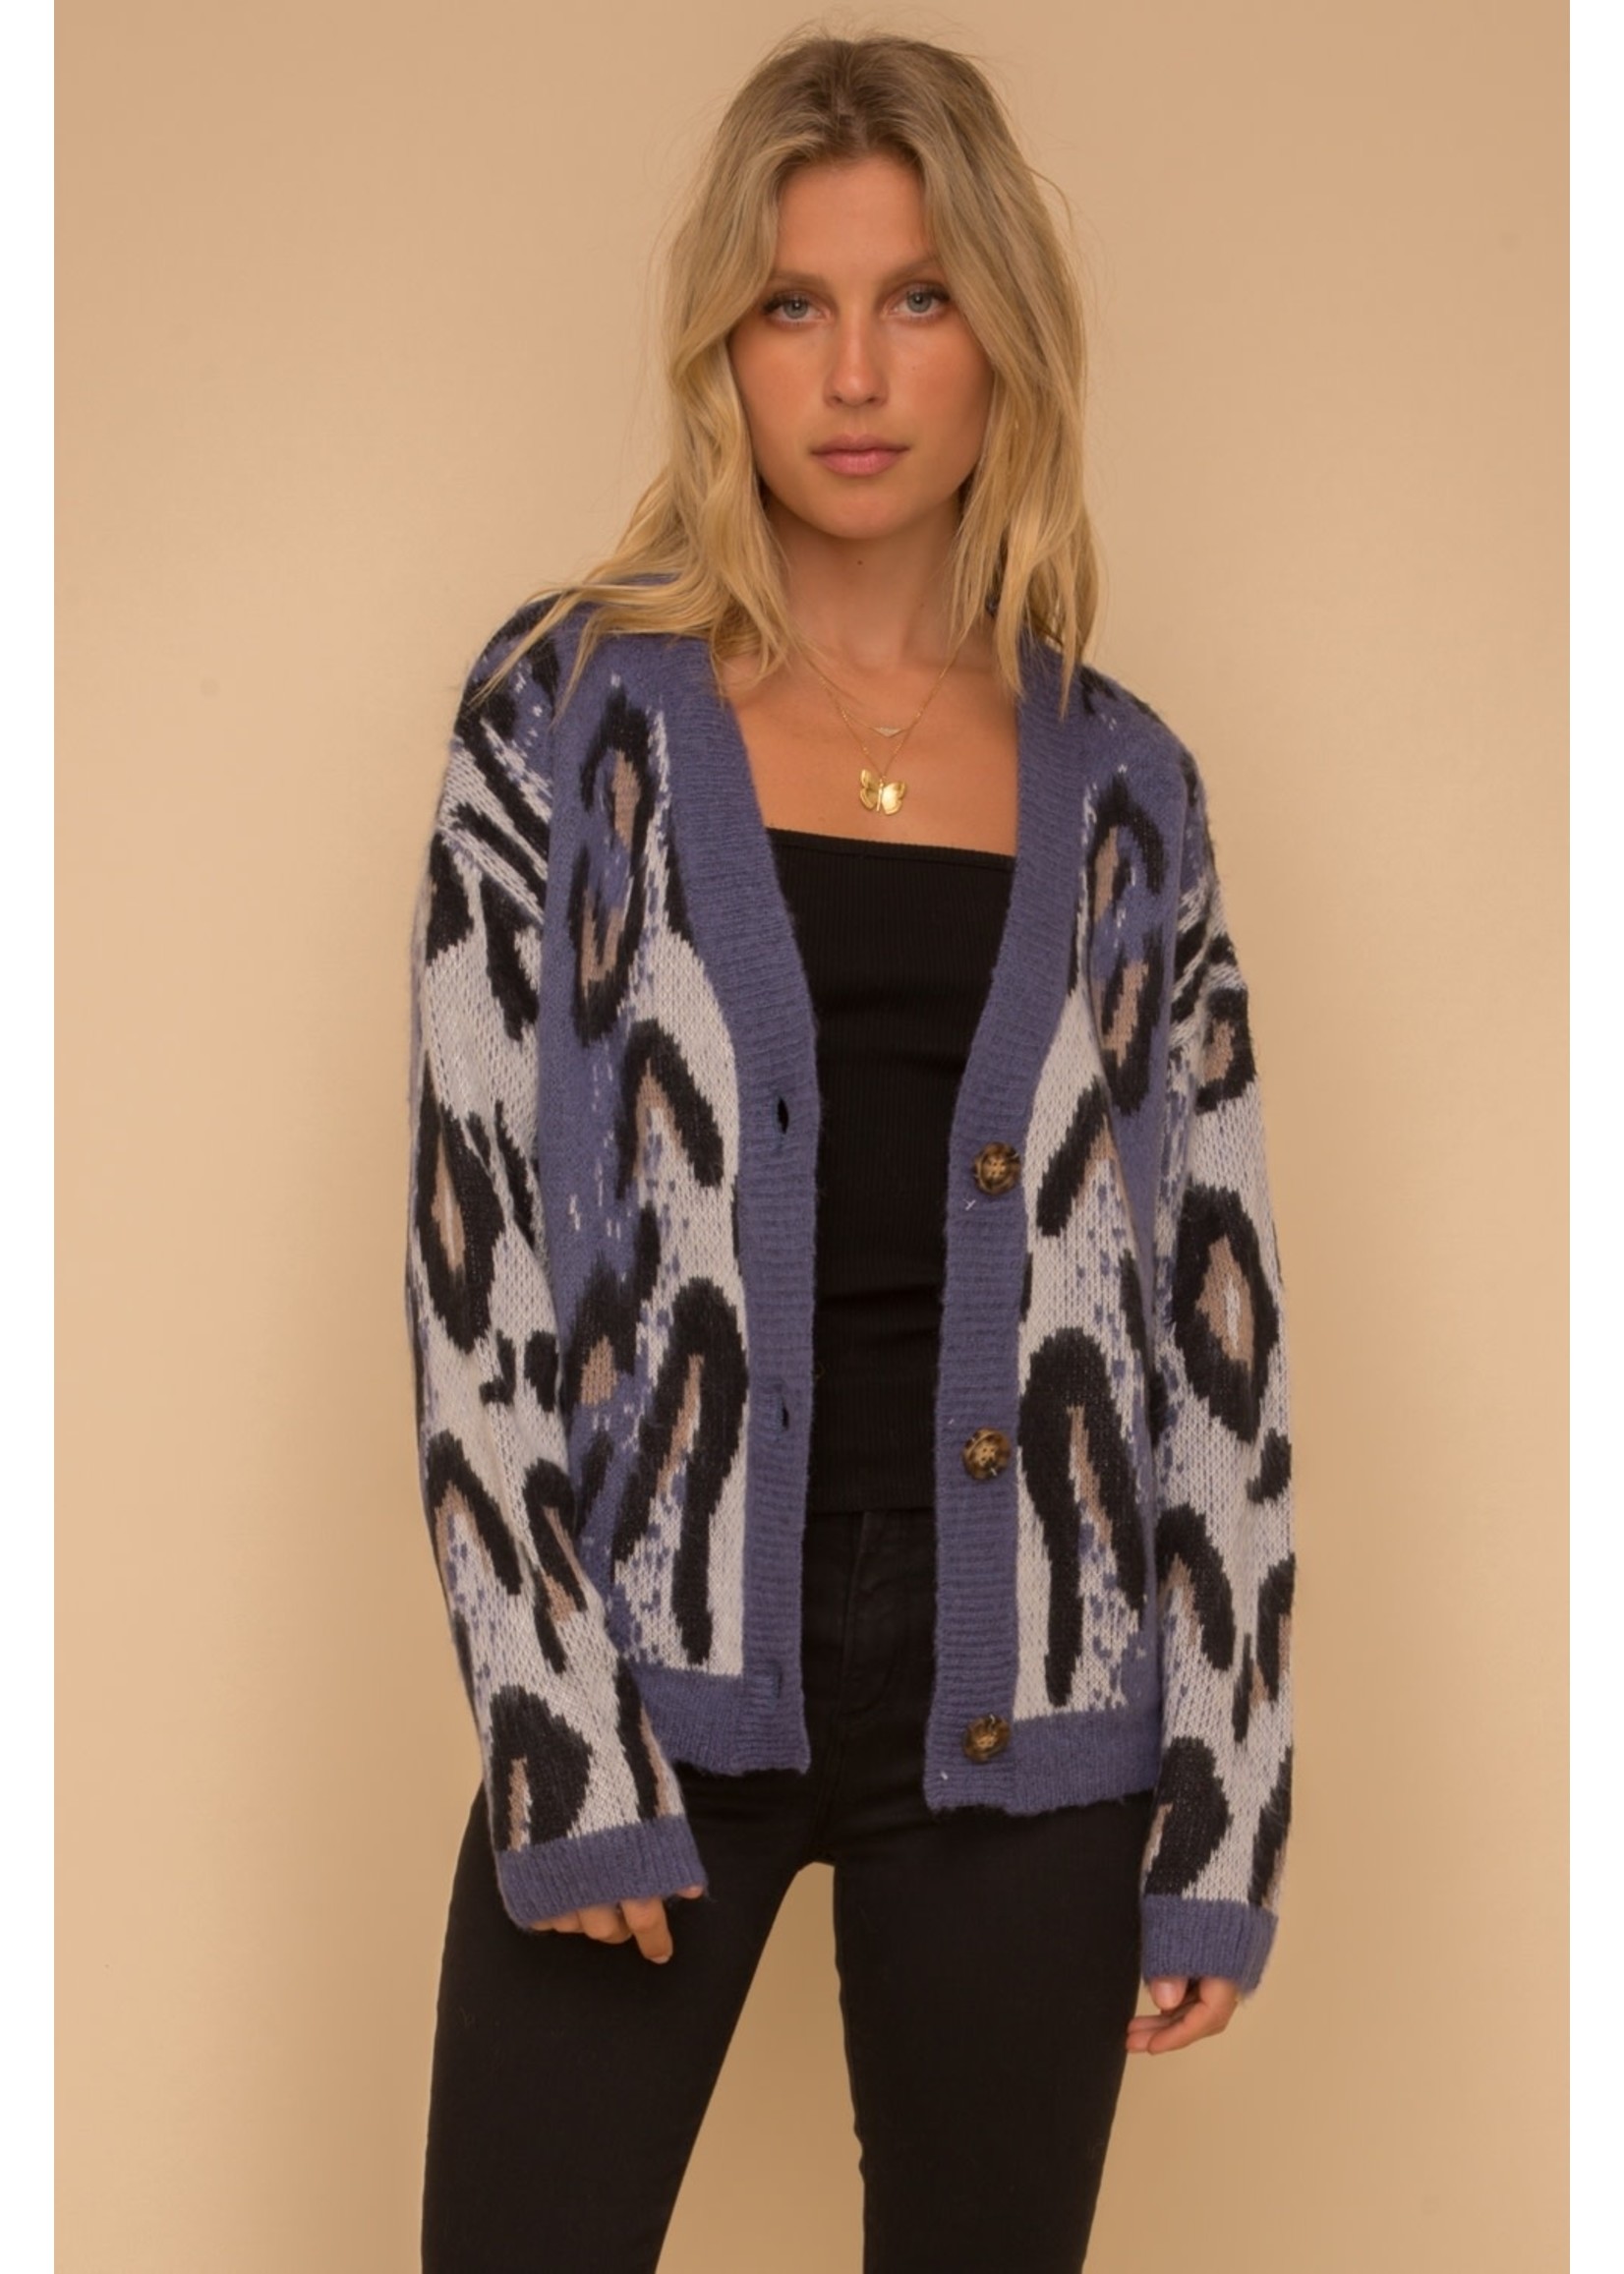 Hem & Thread Leopard Jacquard Cardigan Sweater